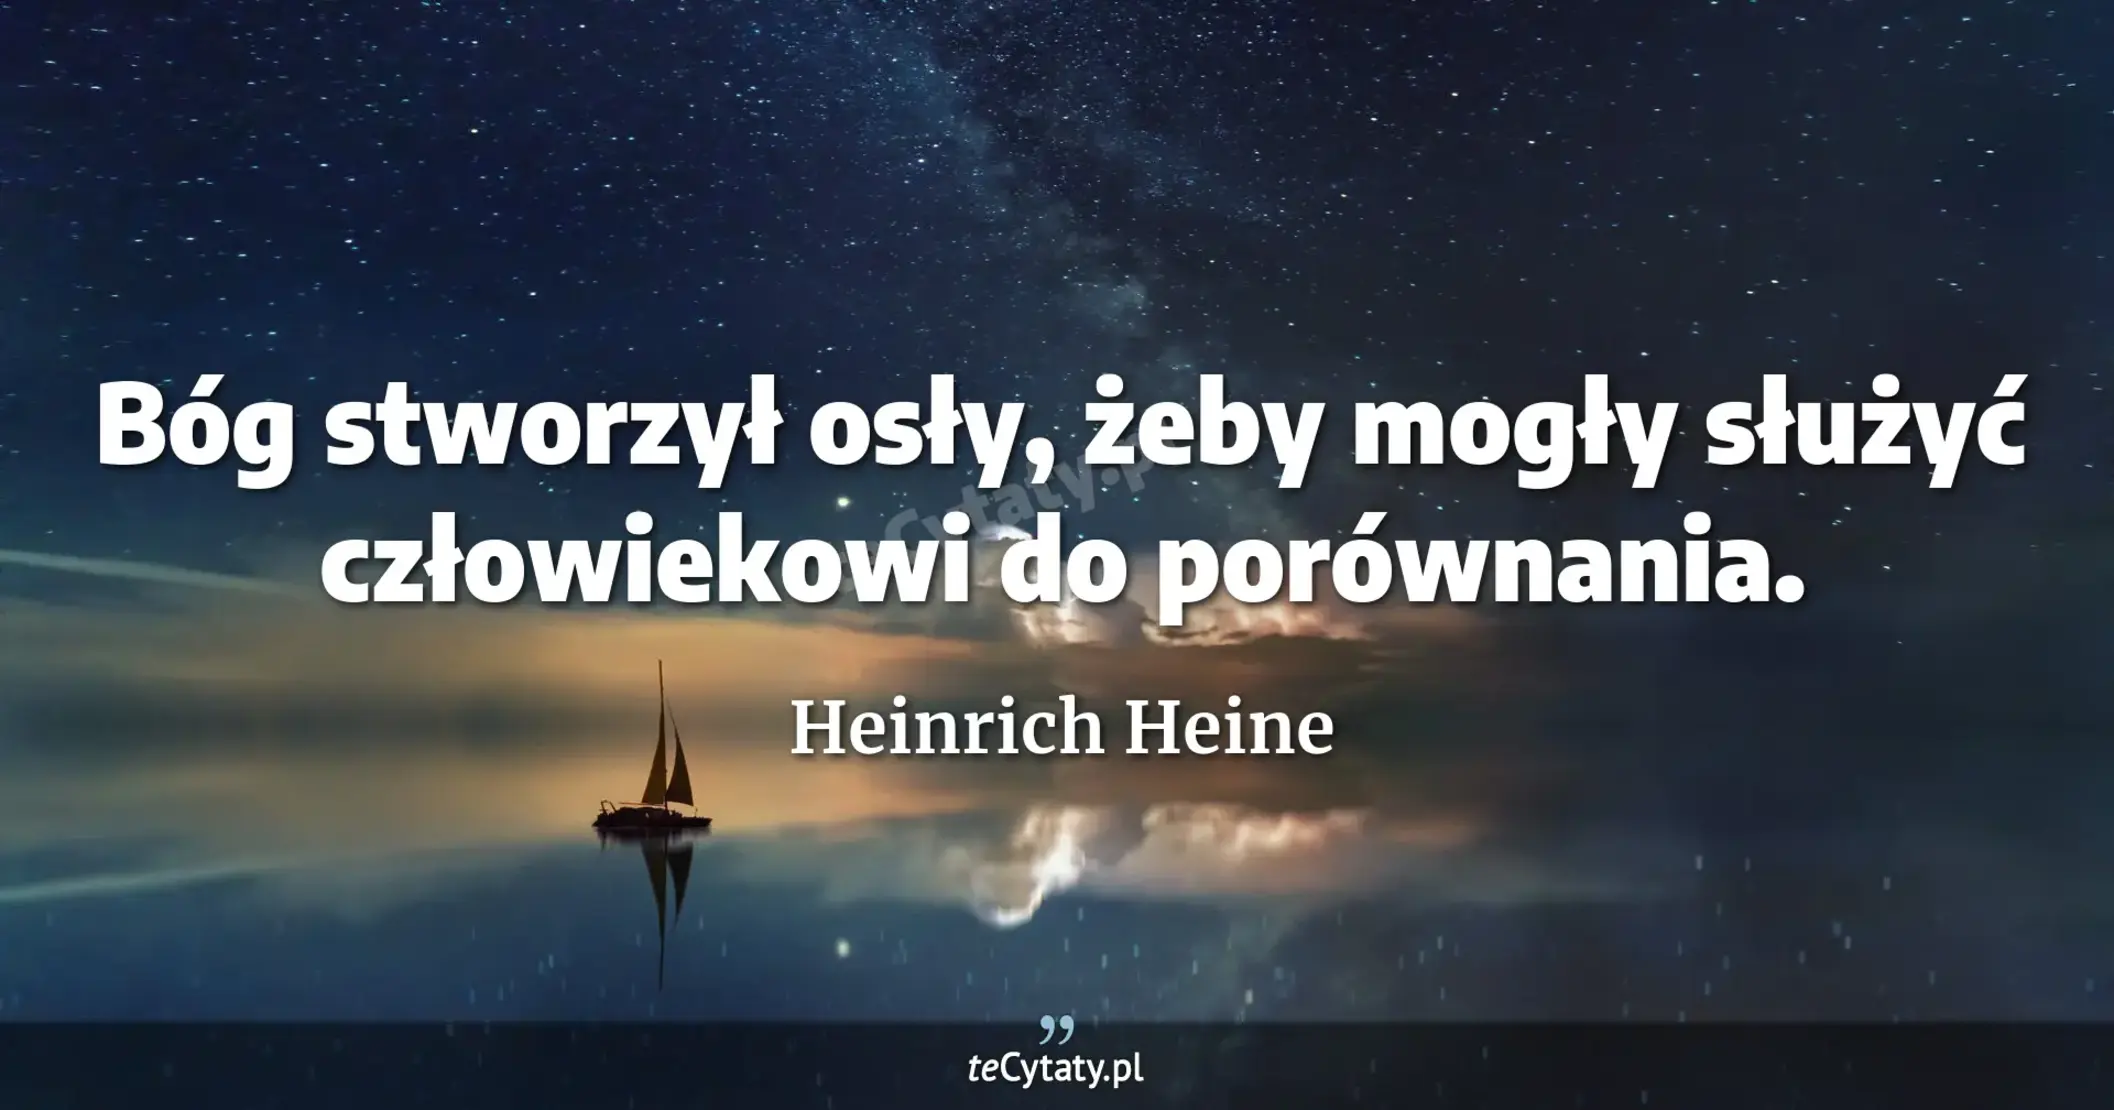 Bóg stworzył osły, żeby mogły służyć człowiekowi do porównania. - Heinrich Heine